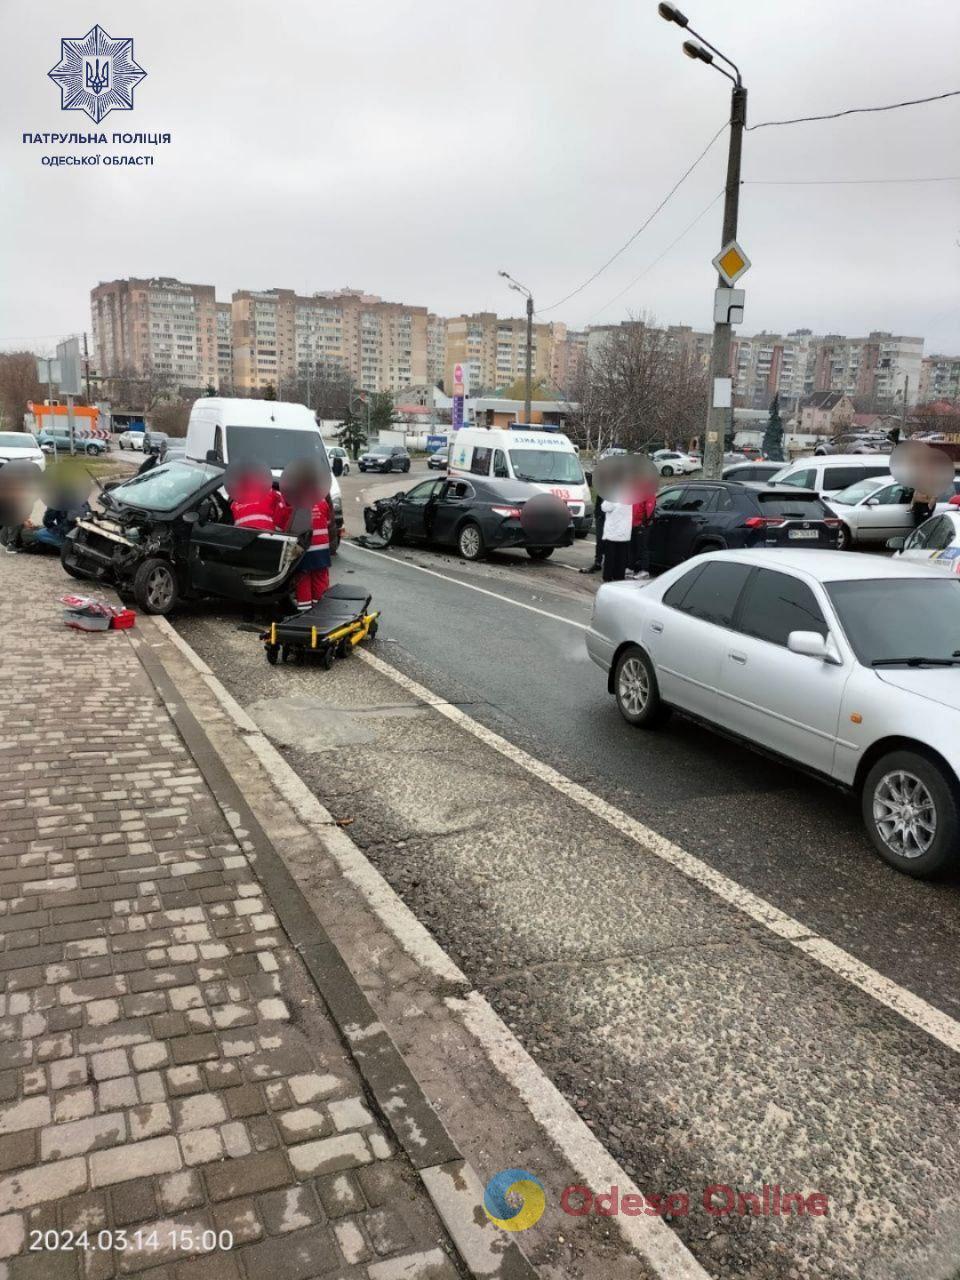 Одесса: в тройном ДТП на Люстдорфской дороге пострадали люди